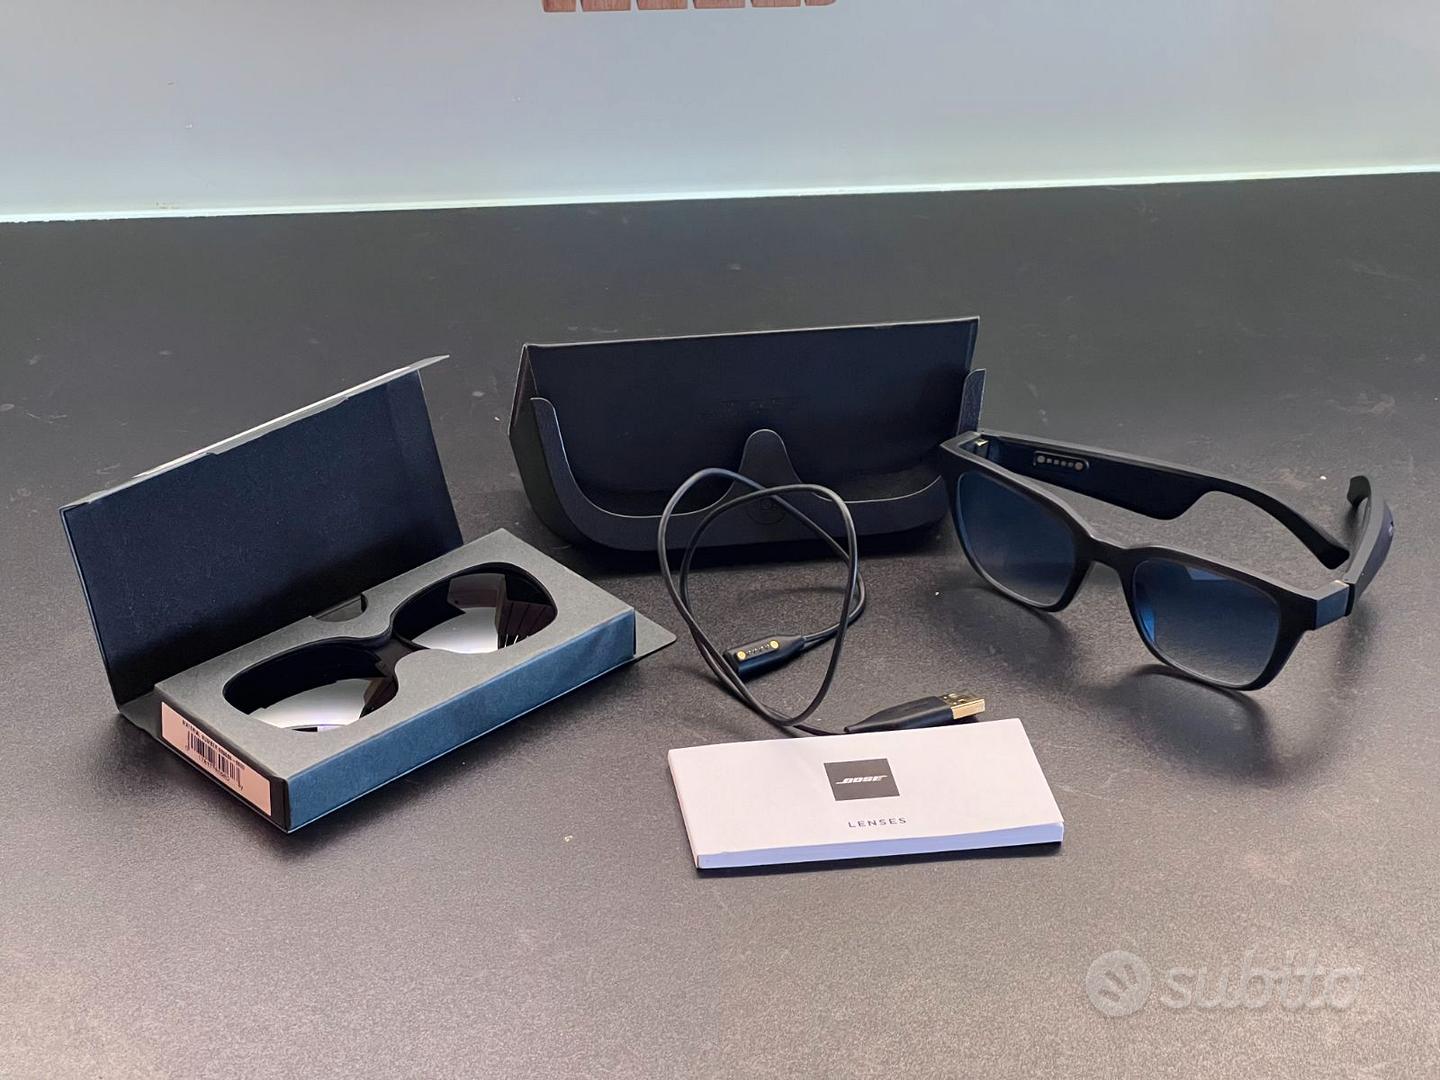 Arrivano in Italia i Bose Frames, occhiali da sole con realtà aumentata  acustica